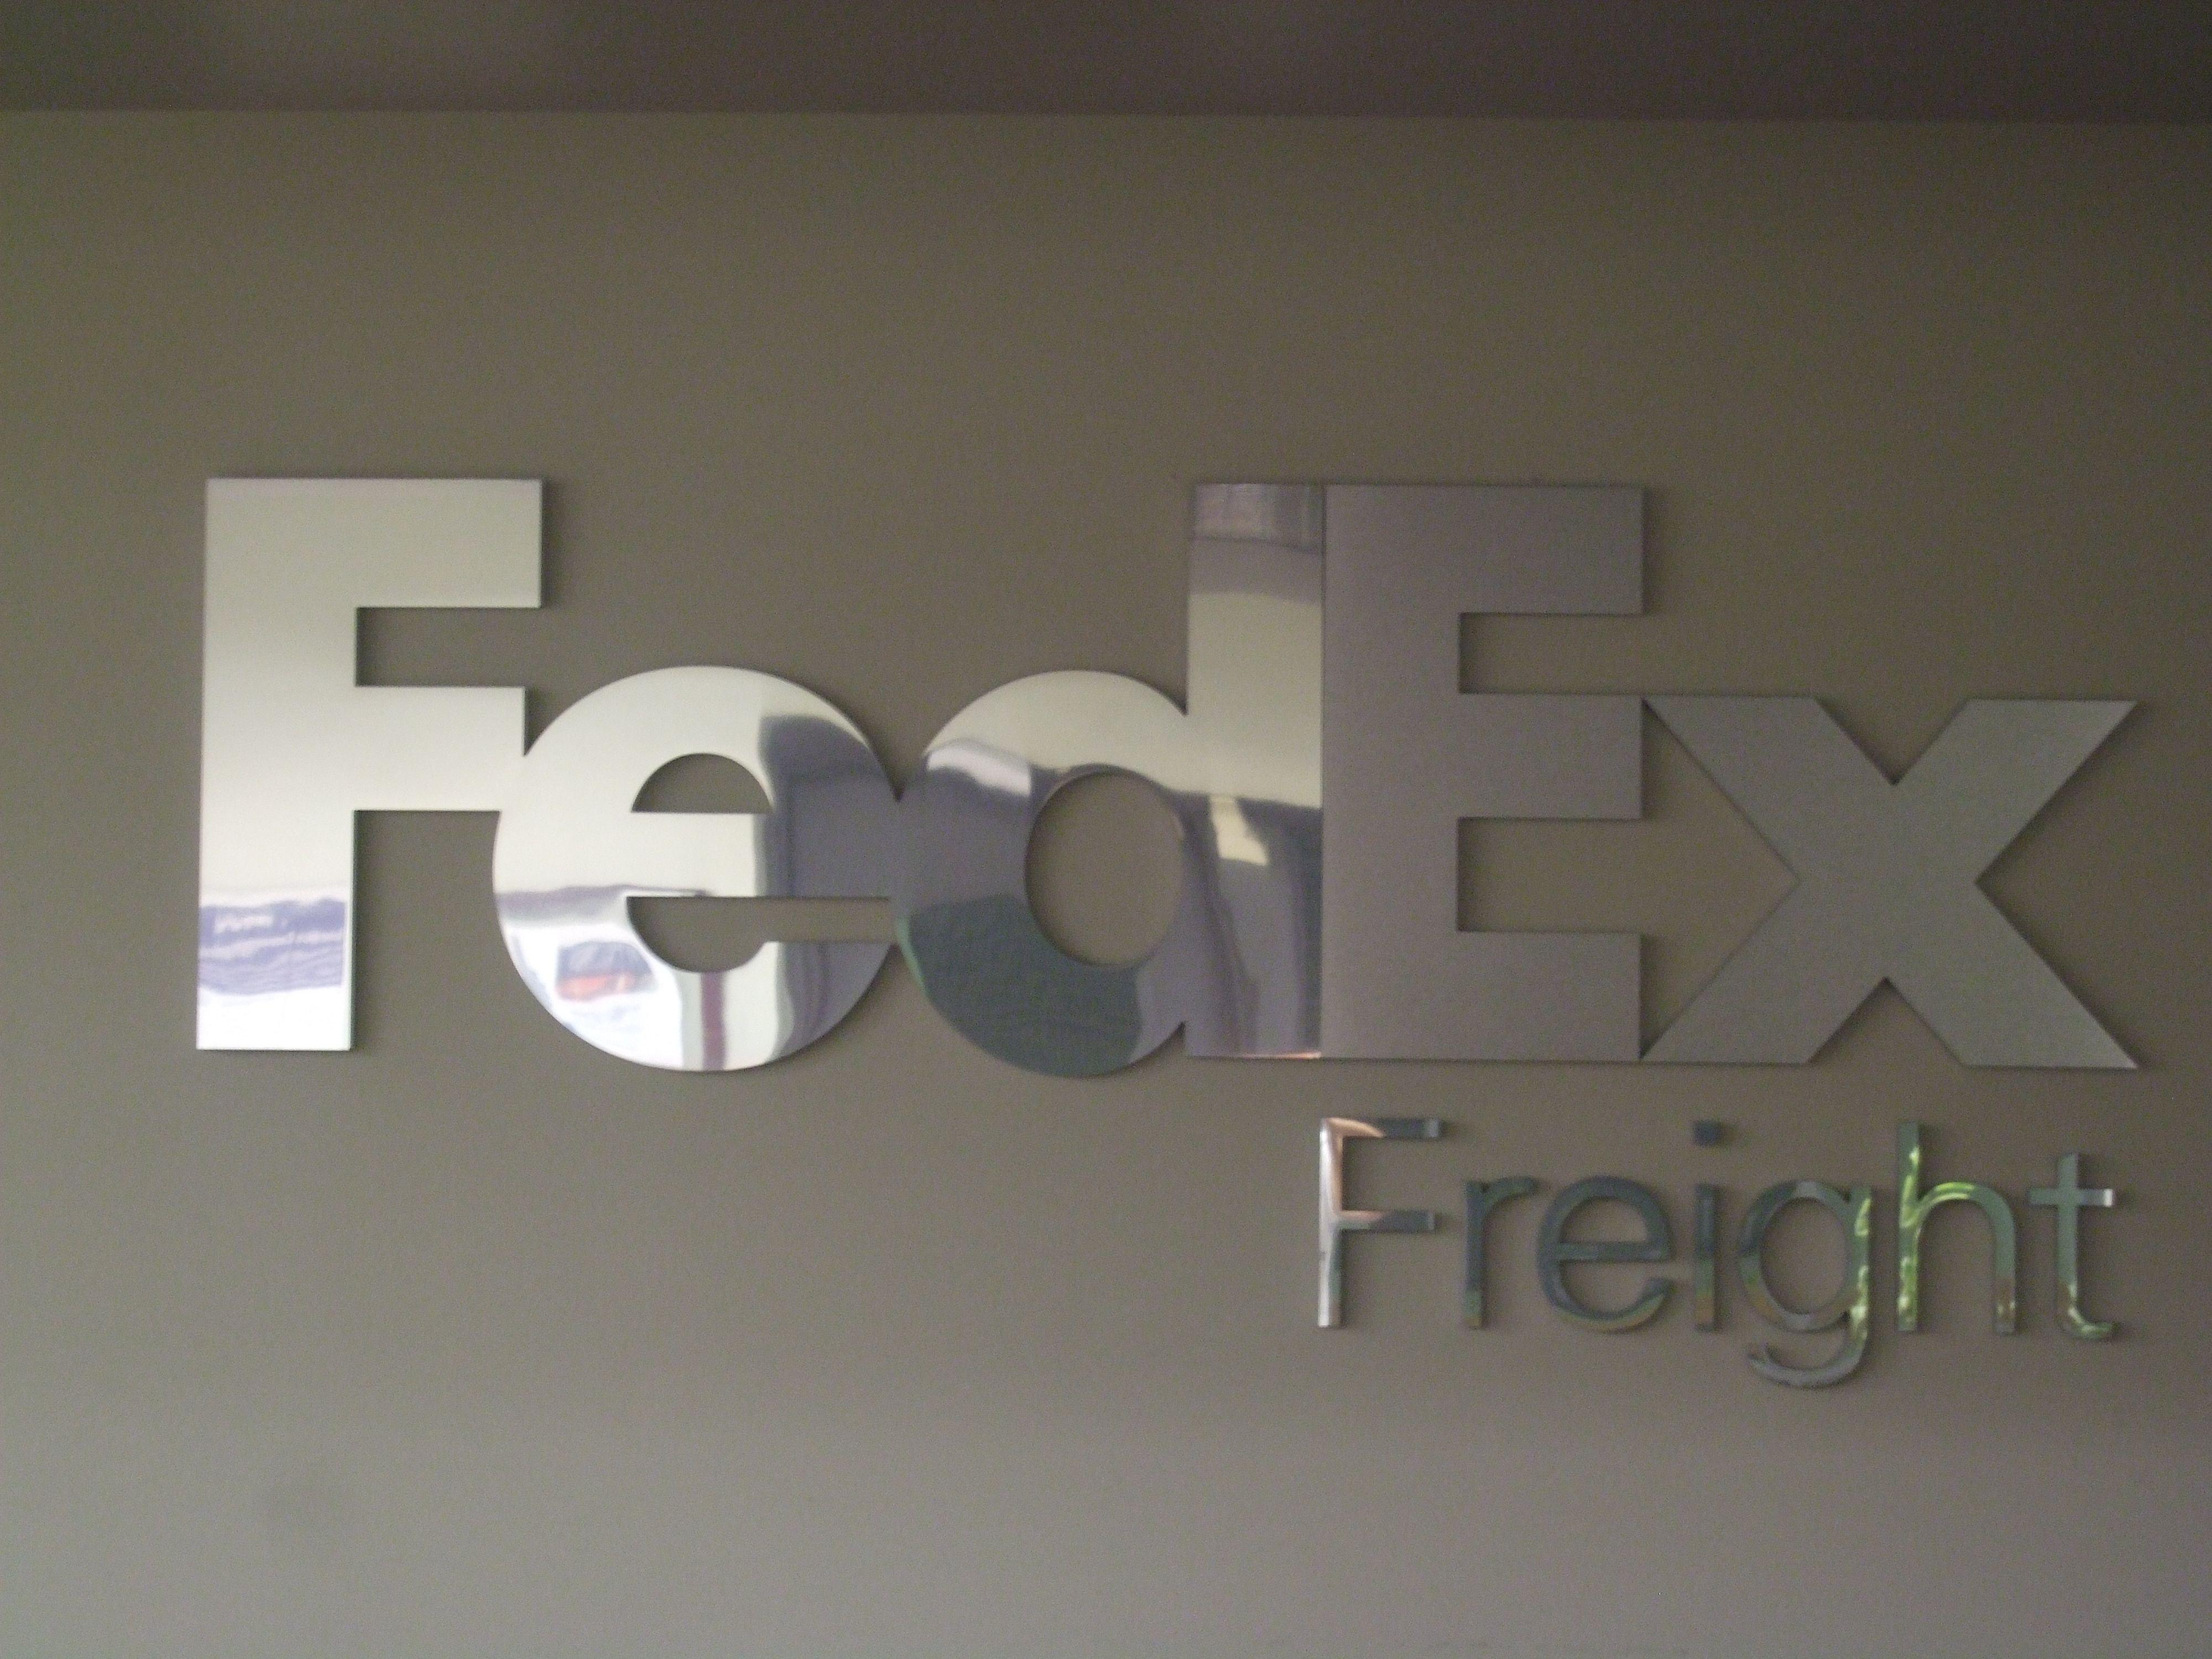 FedEx Freight Logo - FedEx Freight logo at Wilson Avenue. FedEx. Fedex express, Parcel